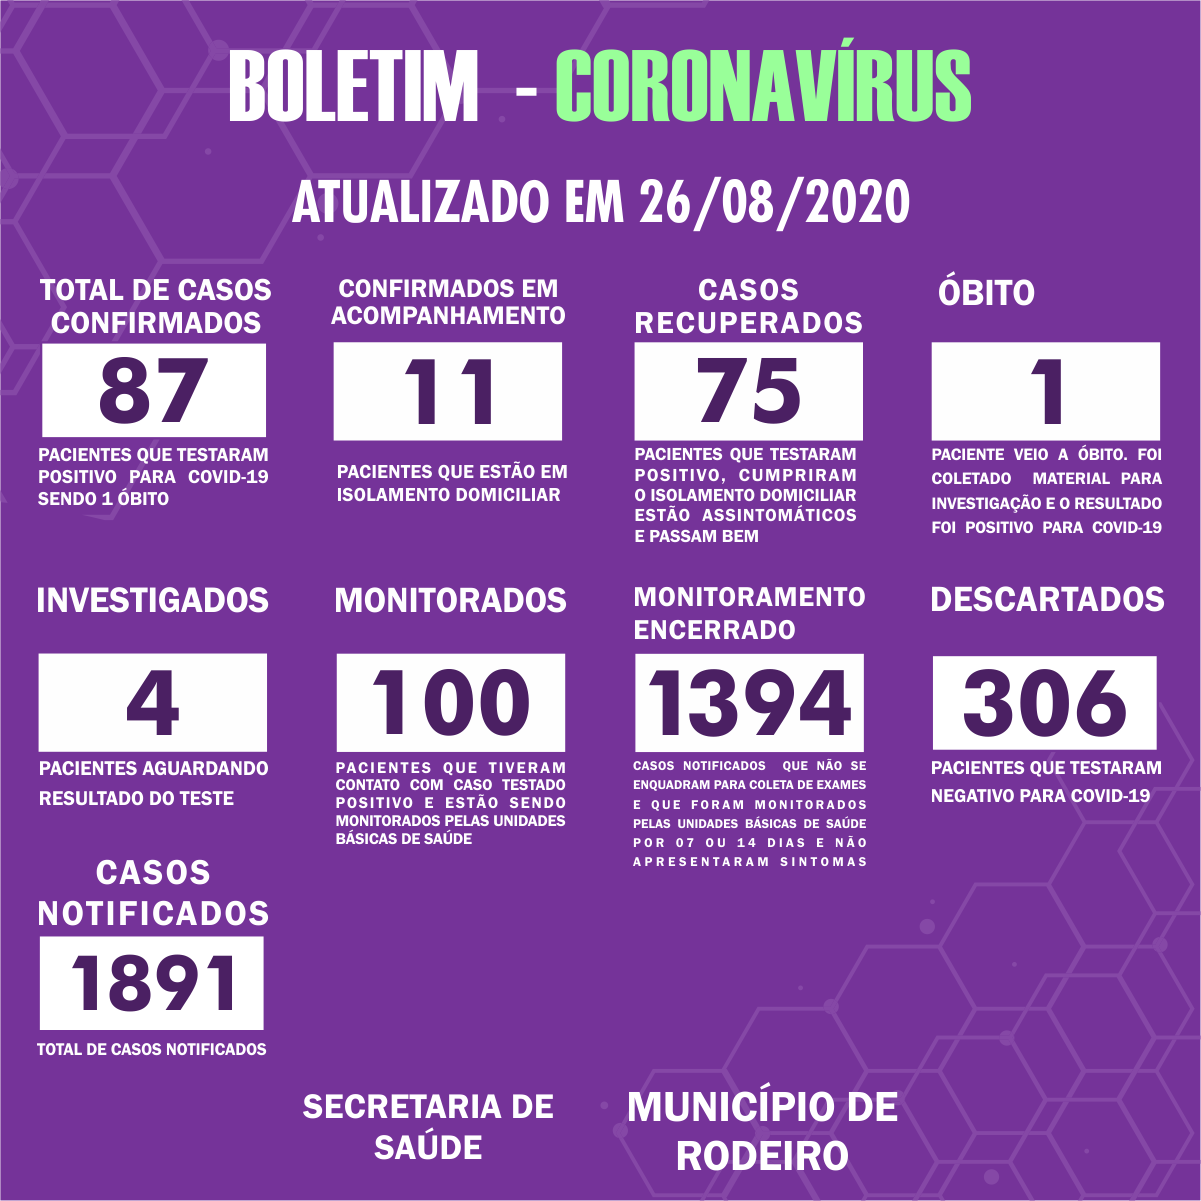 Boletim Epidemiológico do Município de Rodeiro sobre coronavírus, atualizado em 26/08/2020